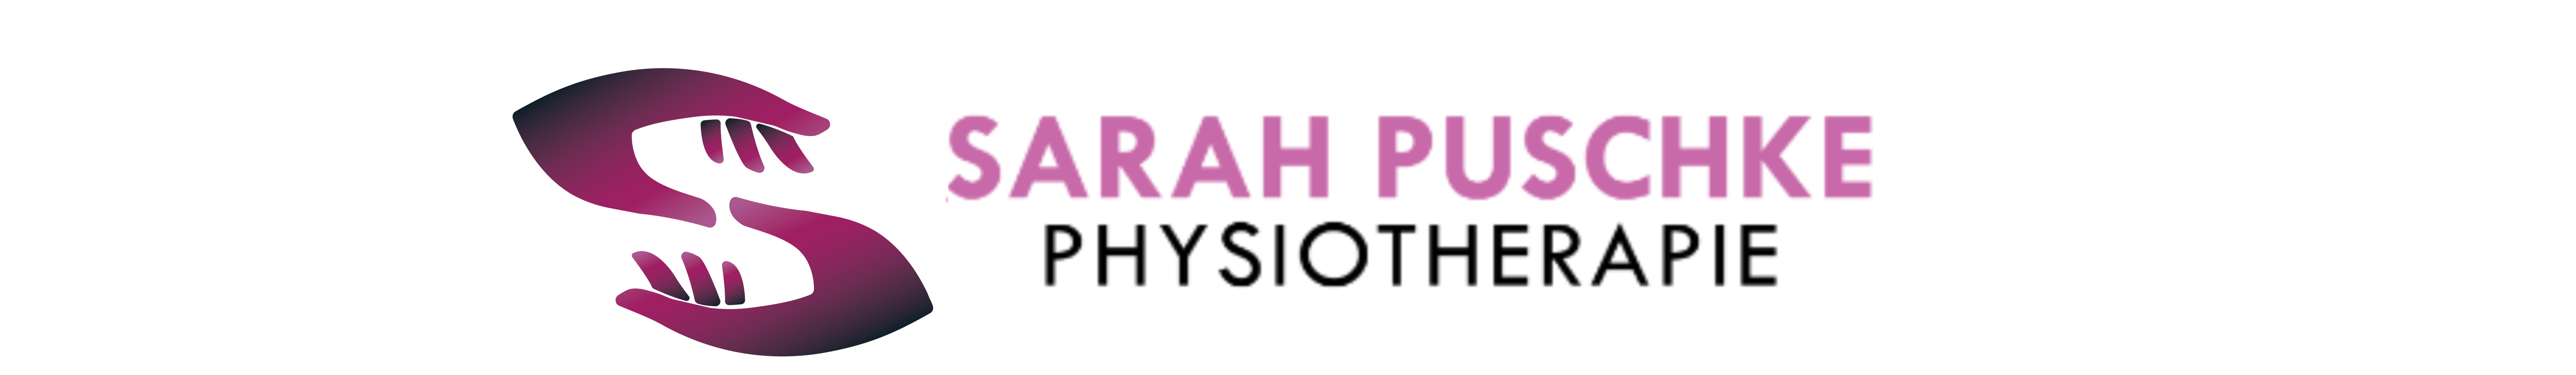 Sarah Puschke